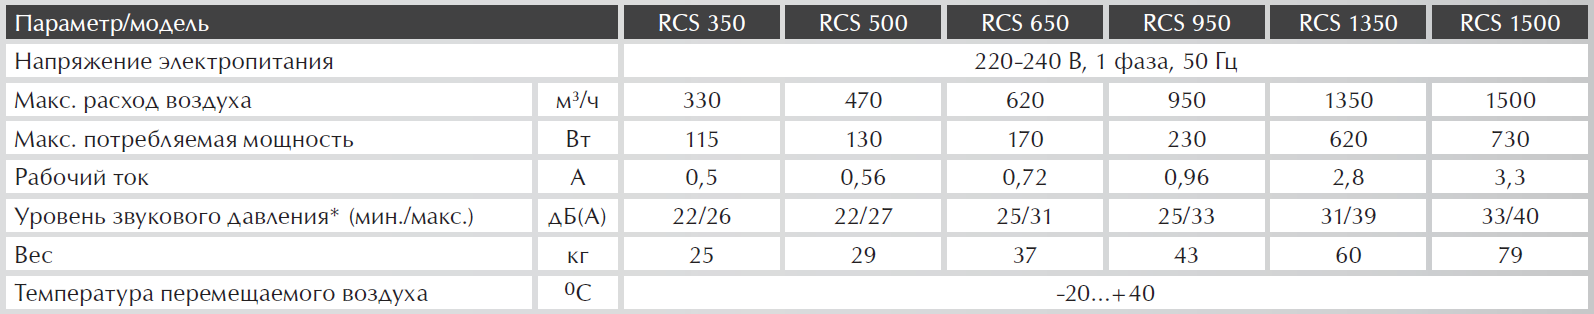 Технические характеристики на приточно-вытяжные установки Royal Clima RCS